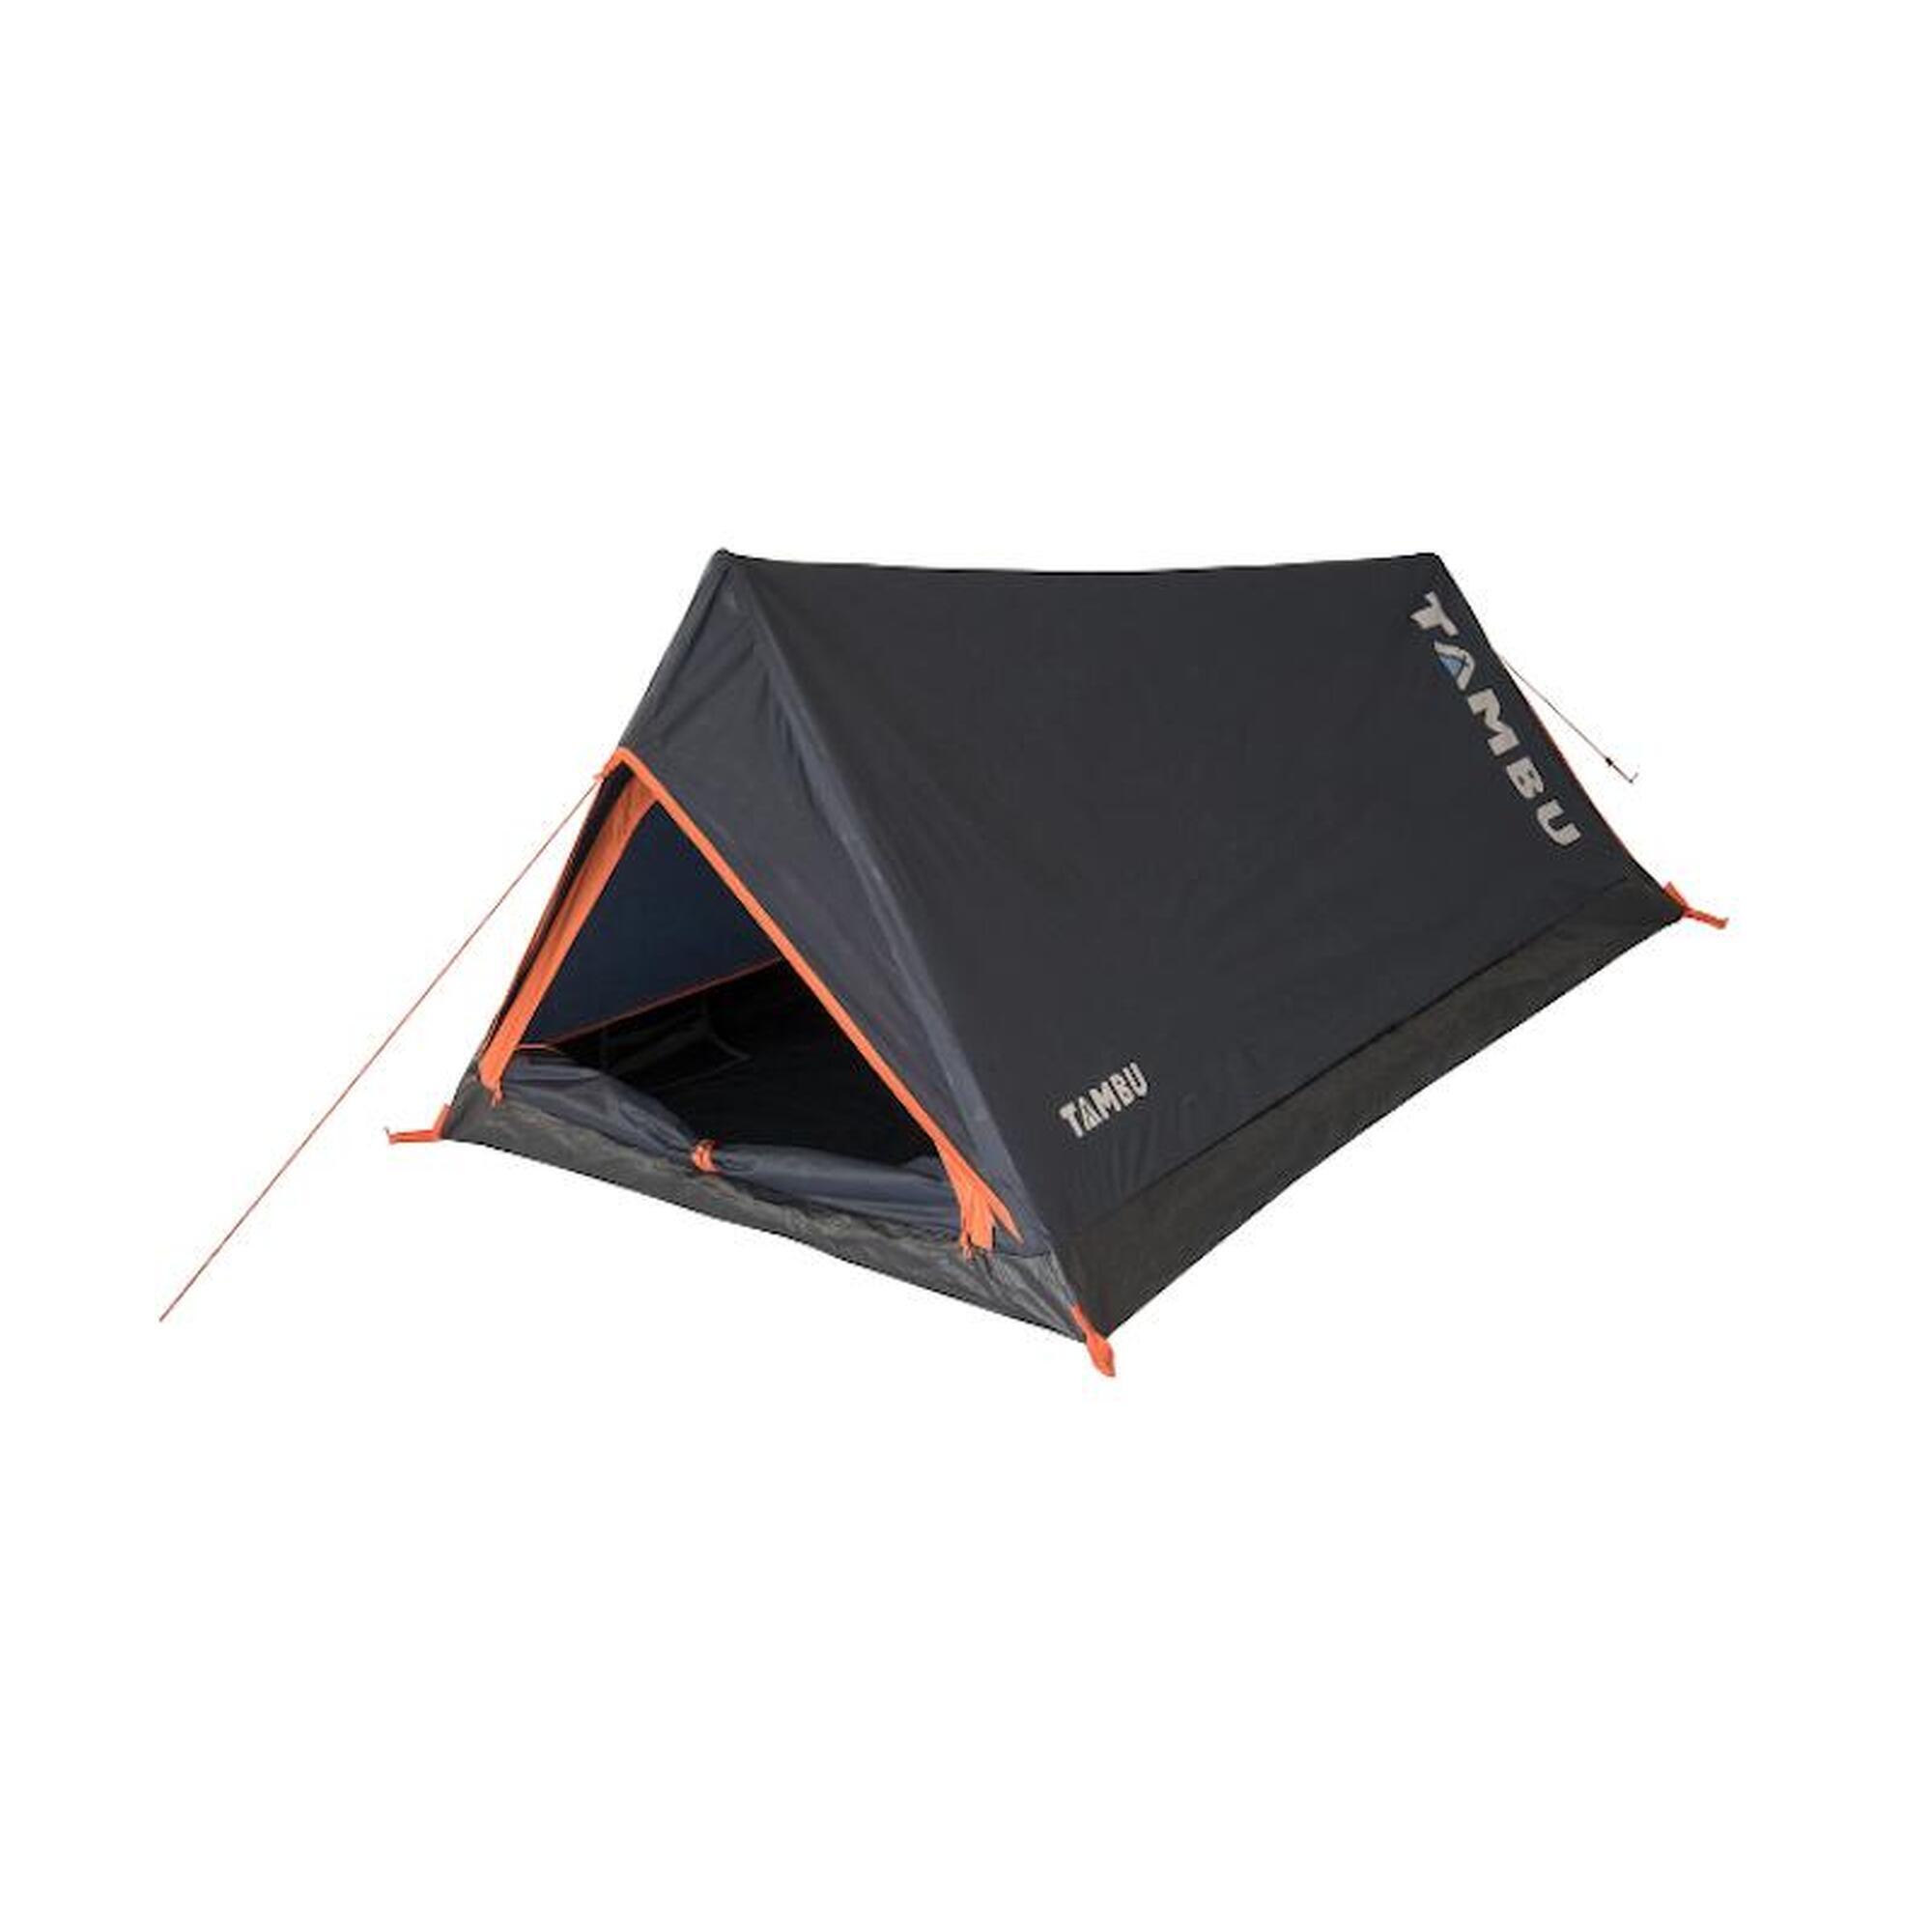 Палатка Tambu Bayu легкая двухместная бивачная, синий / оранжевый палатка туннельная tambu jangala на 4 человека темно синий оранжевый